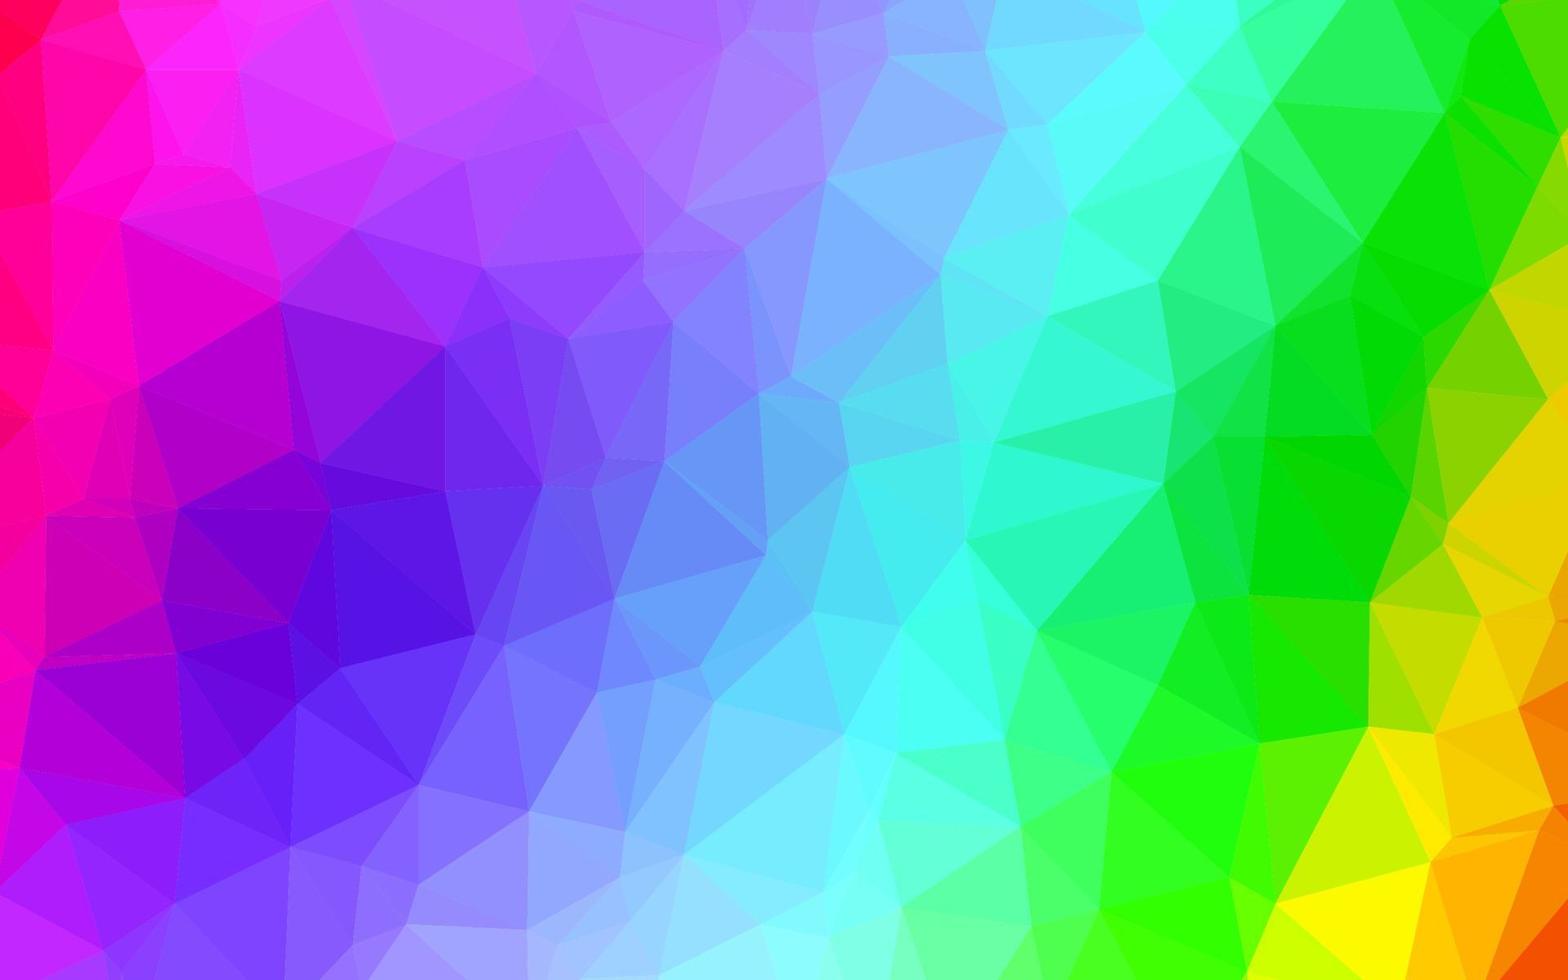 ljus mångfärgad, regnbåge vektor triangel mosaik mall.